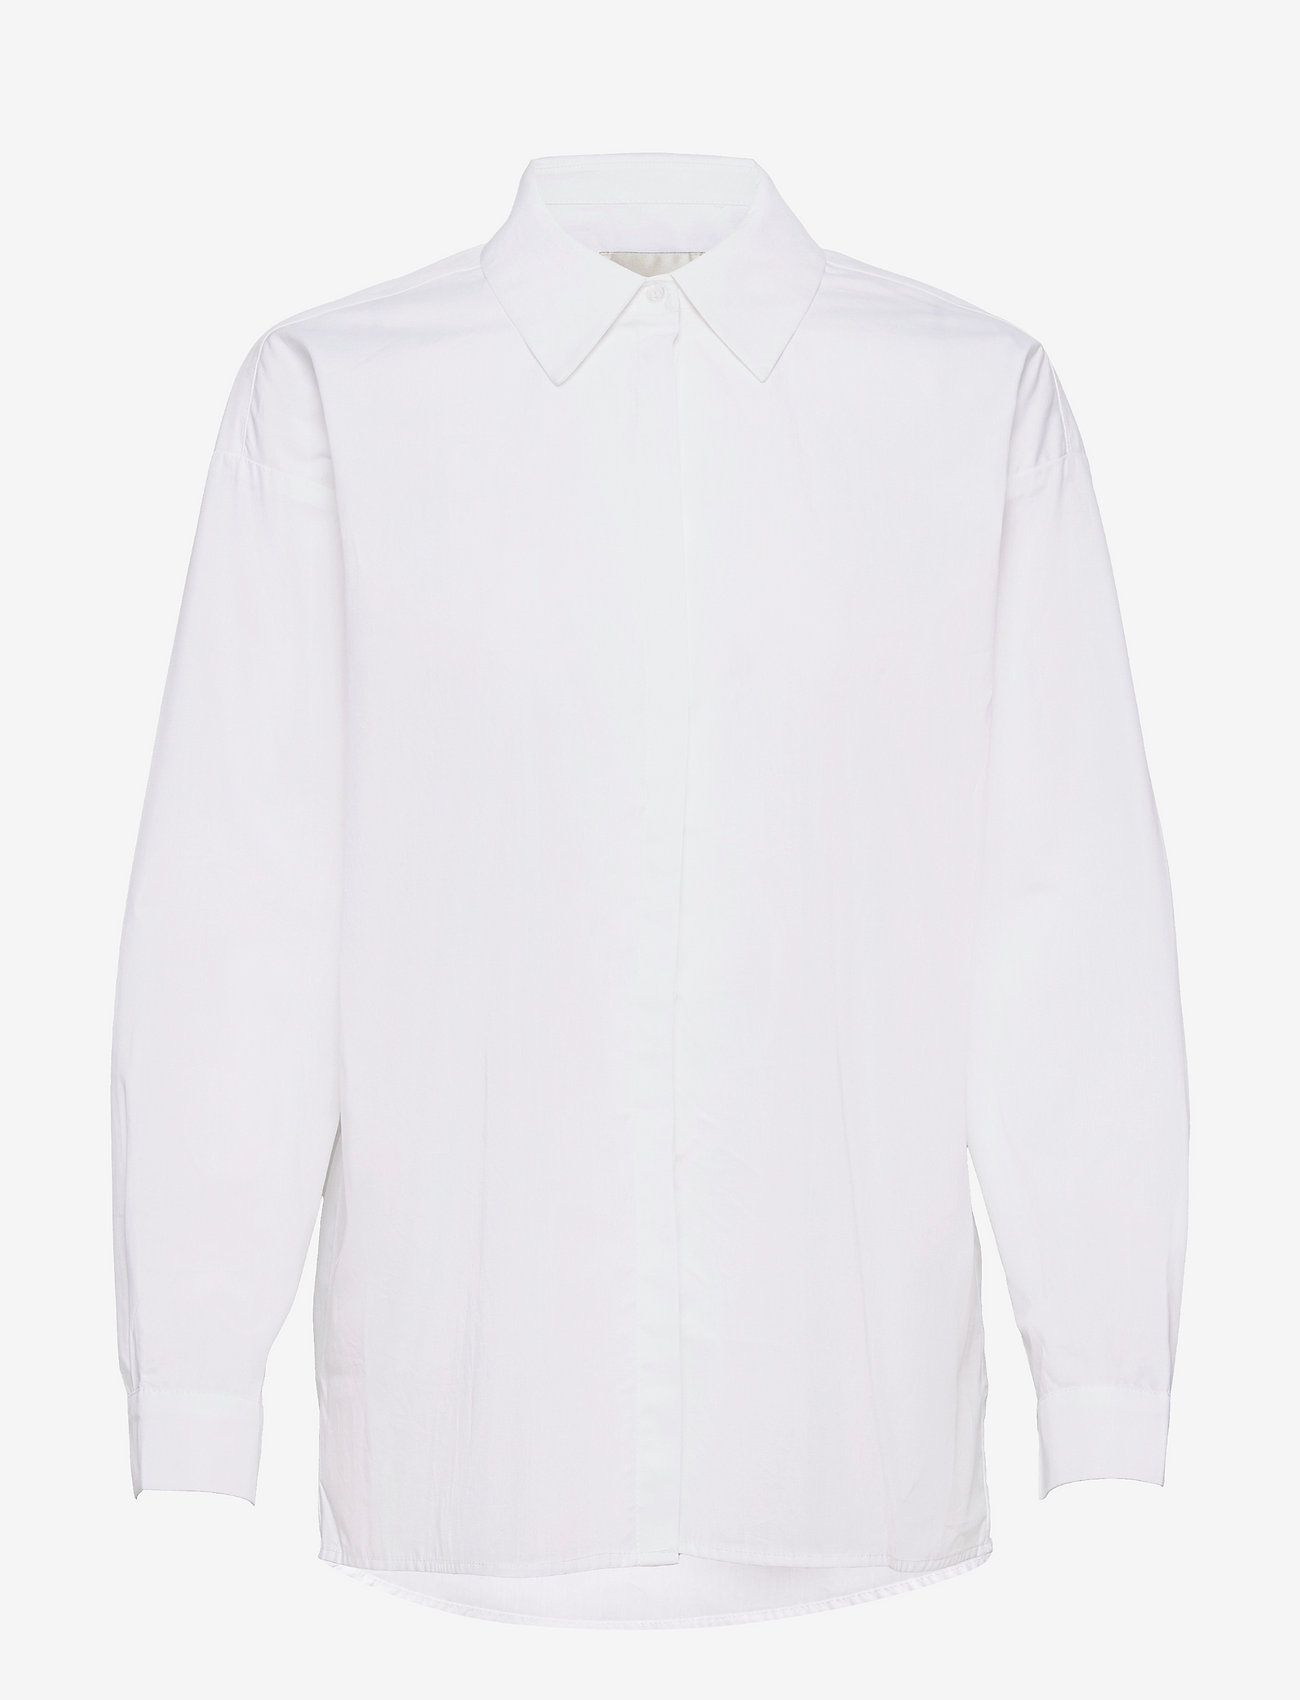 My Essential Wardrobe - 03 THE SHIRT - pitkähihaiset paidat - bright white - 0